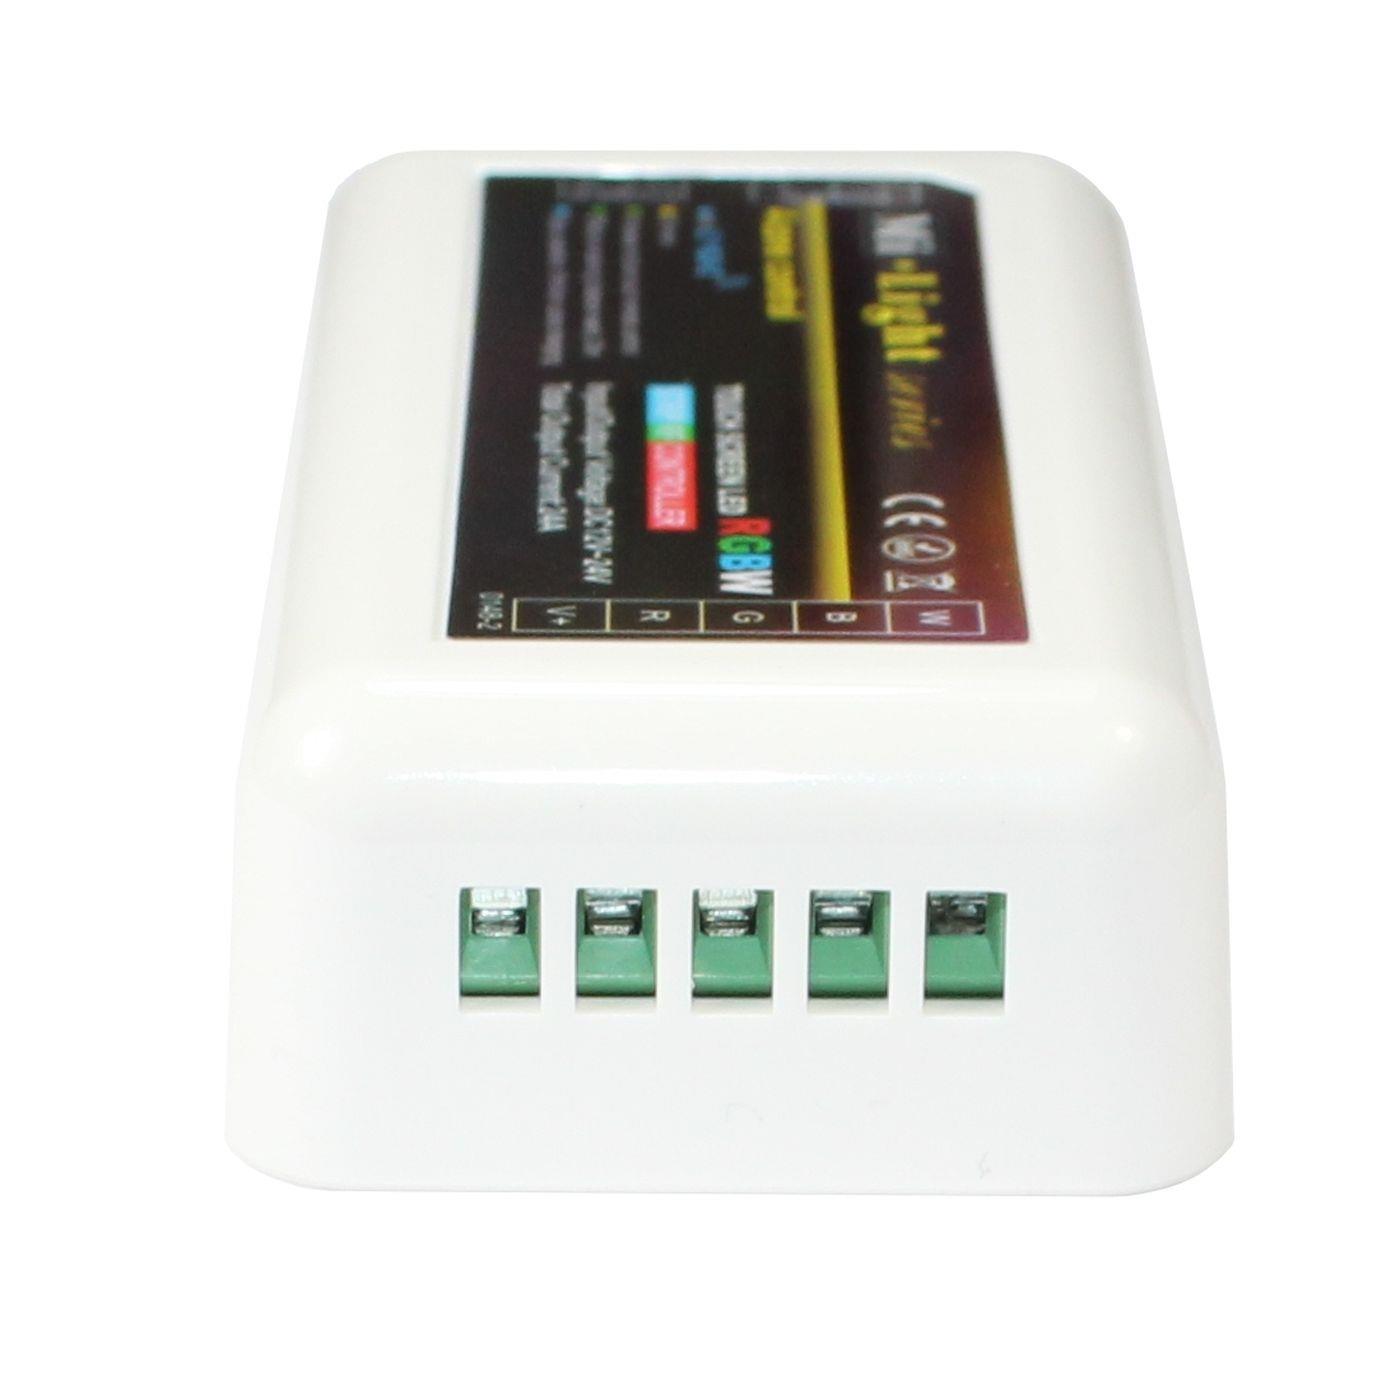 MiLight MiBoxer RGBW LED 4-Zone Empfänger 12...24V 240W für Farbwechsel Streifen 5-Pin